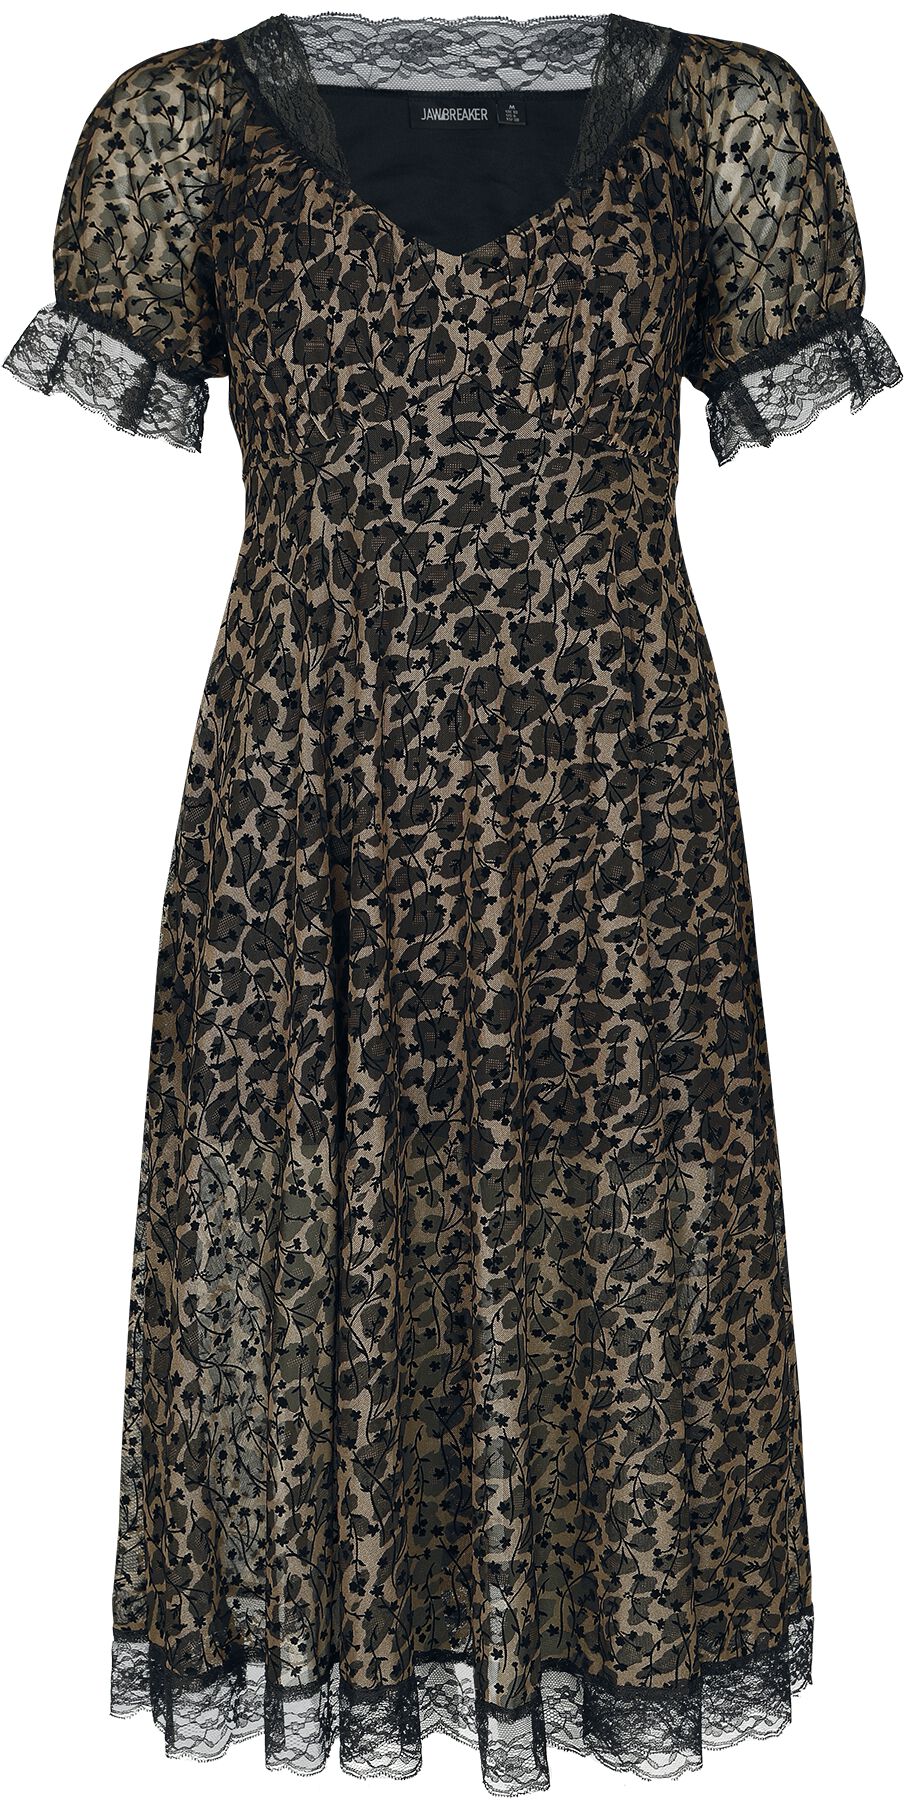 Robe mi-longue Gothic de Jawbreaker - Leopard Midi Dress - XS à M - pour Femme - marron/noir